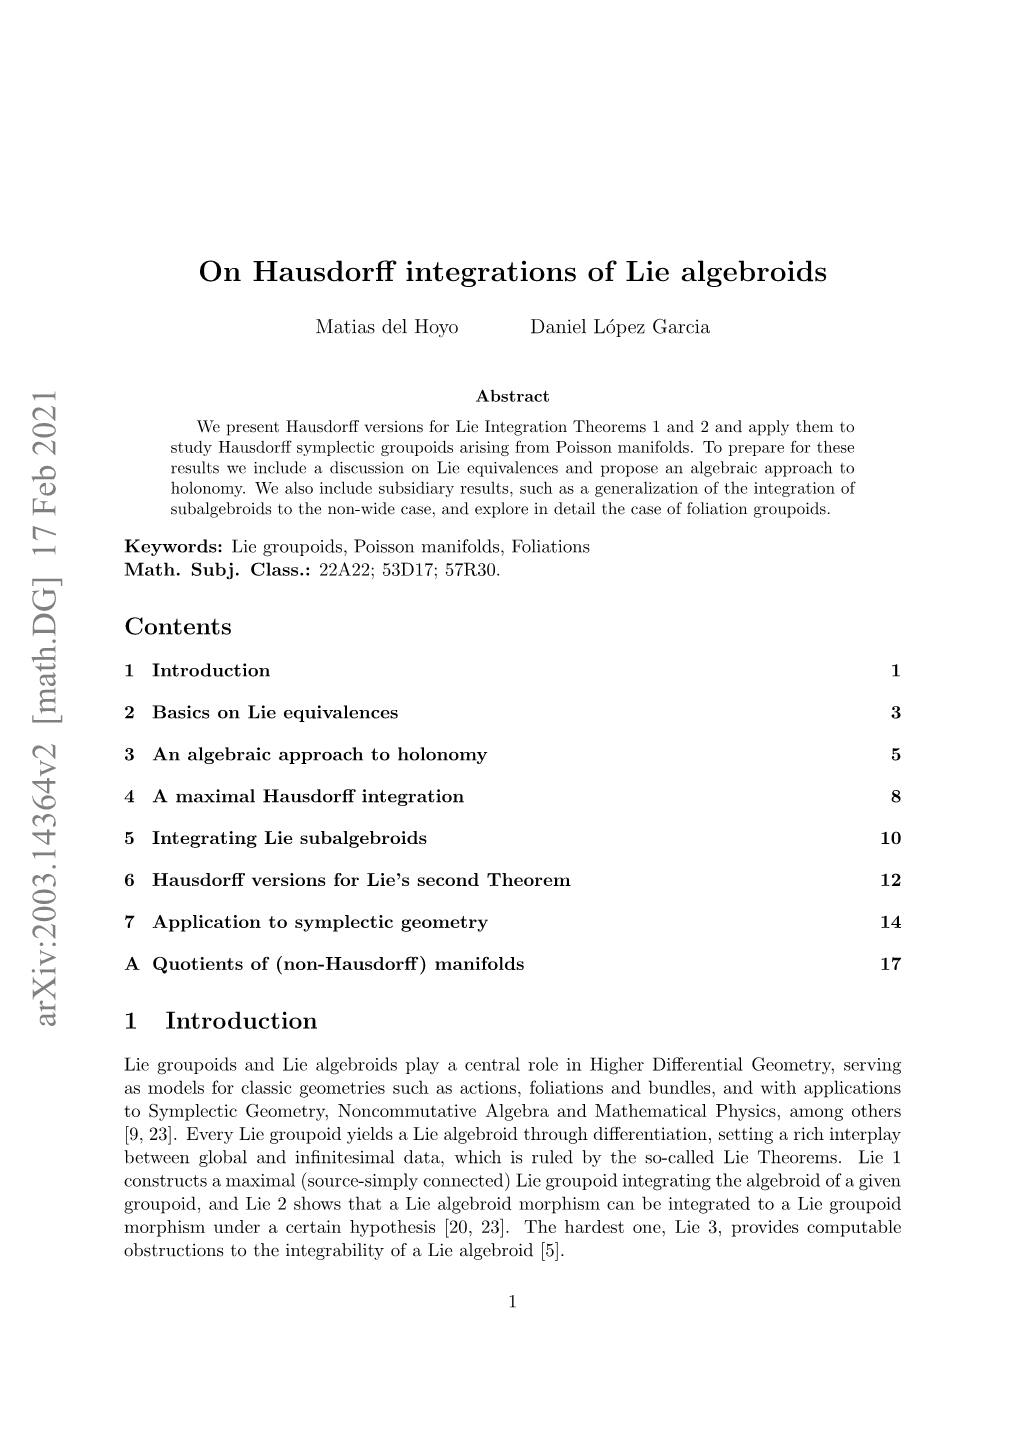 On Hausdorff Integrations of Lie Algebroids